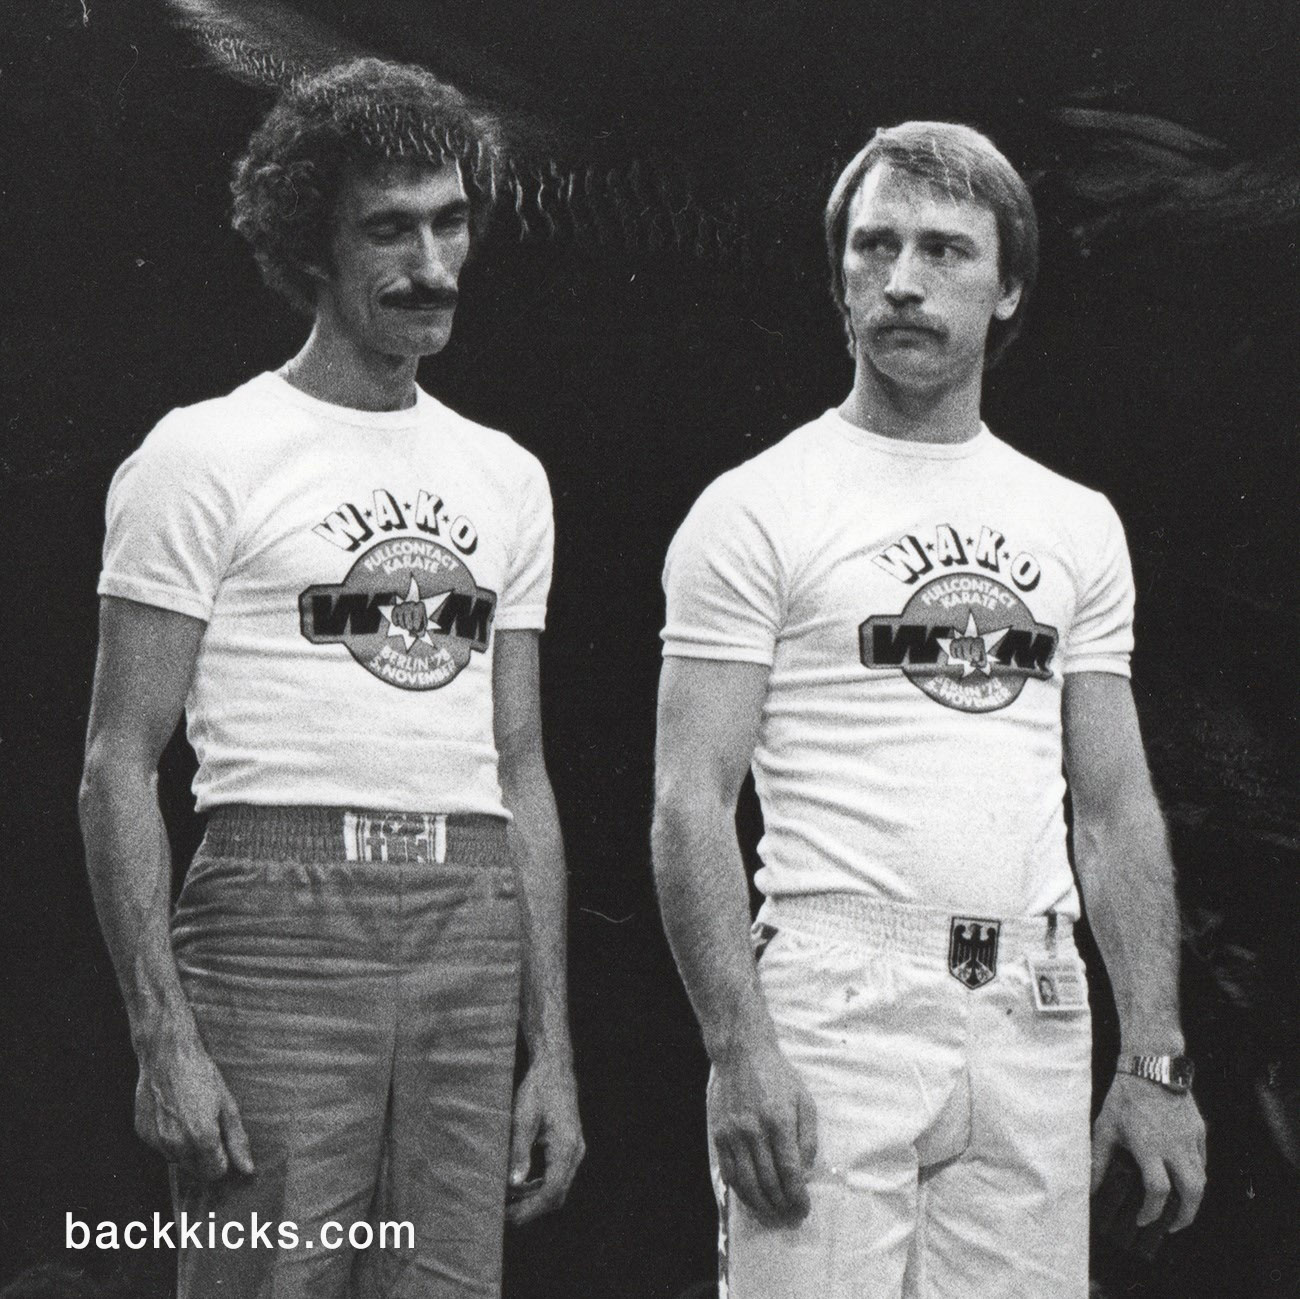 Eröffnung der WAKO-Weltmeisterschaften in Berlin 1978 mit Mike Anderson (links) und Jochen Böckmann (rechts)